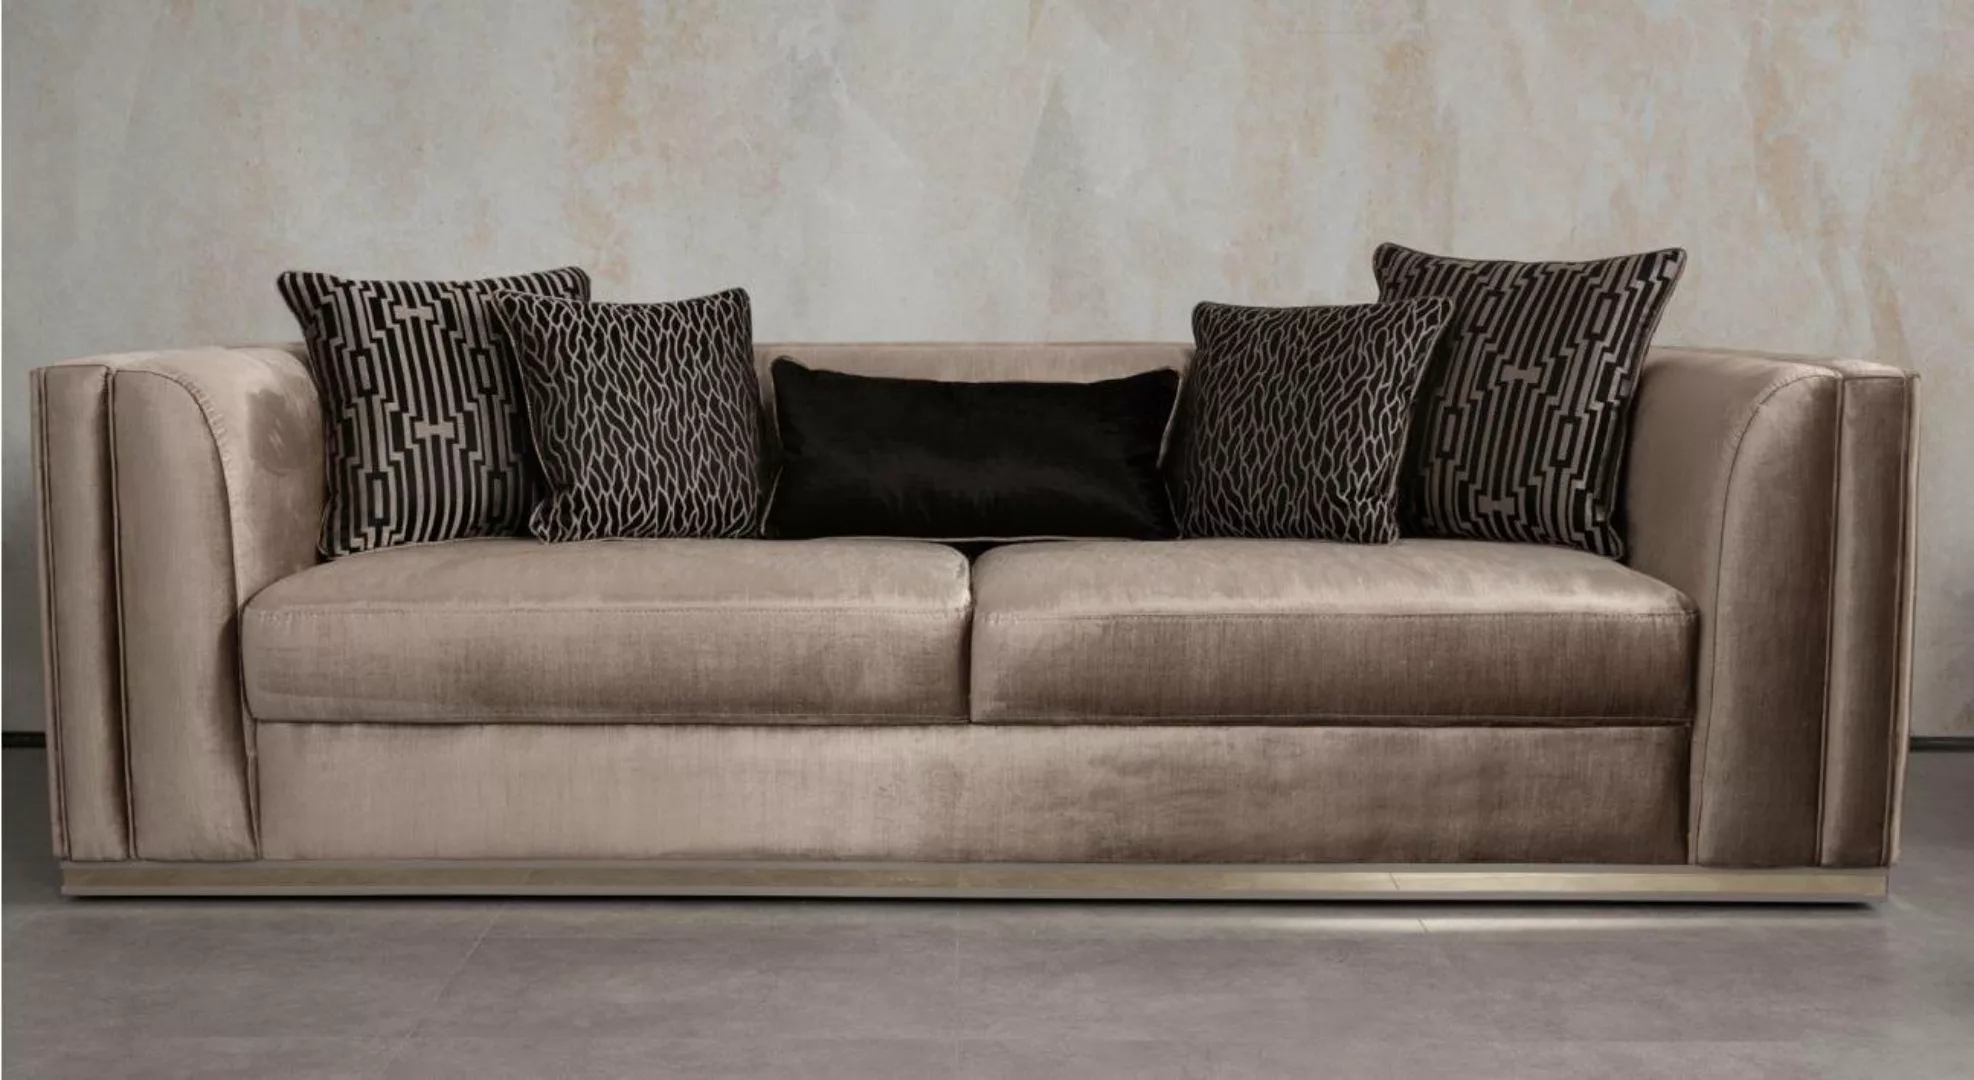 JVmoebel Sofa Sofa 3 Sitzer Couch Holz möbel Sofas Couch italienischer Stil günstig online kaufen